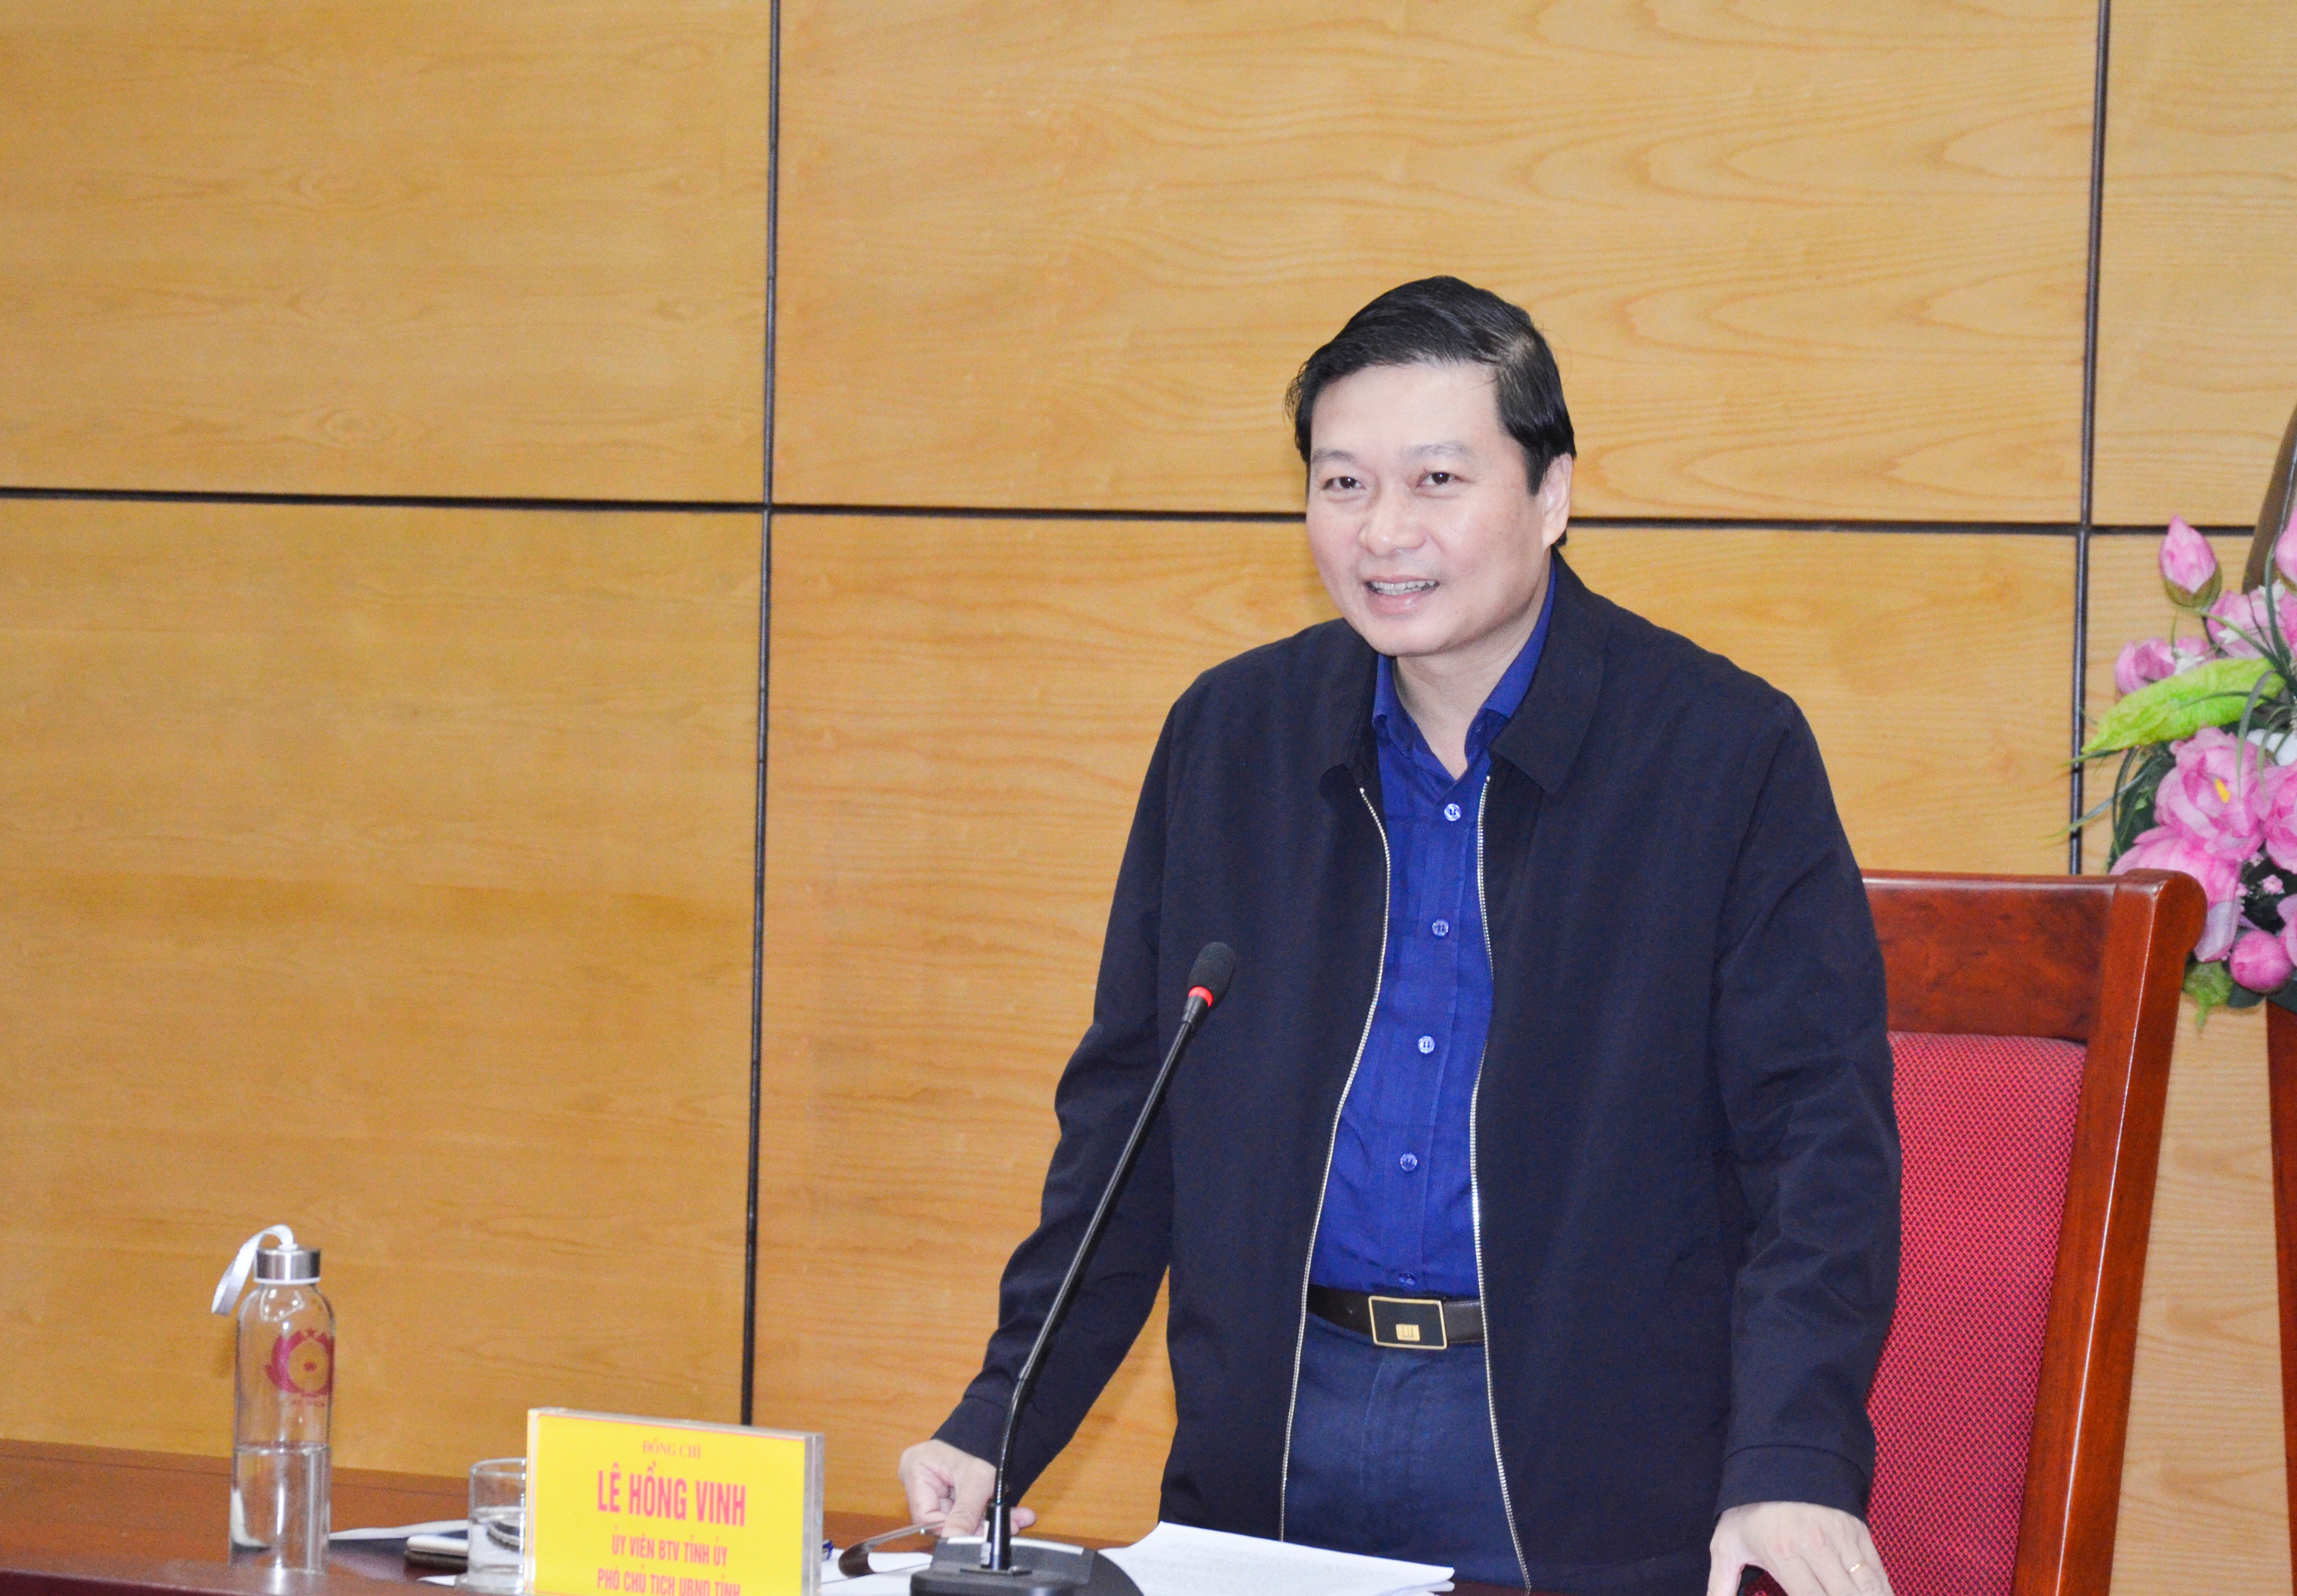 Phó Chủ tịch UBND tỉnh Lê Hồng Vinh kết luận cuộc làm việc. Ảnh: Thanh Lê